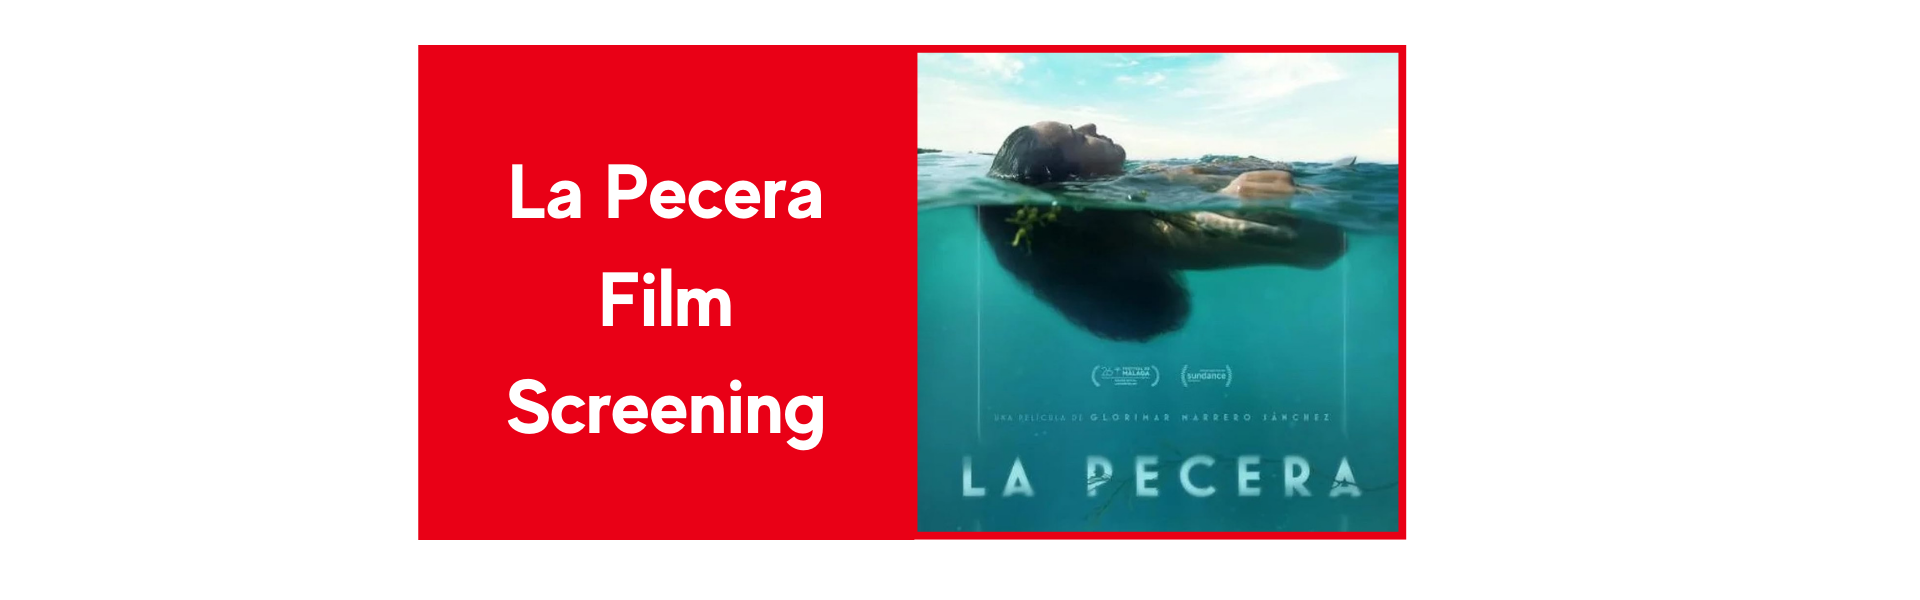 La-Pecera-Film-Screening.png